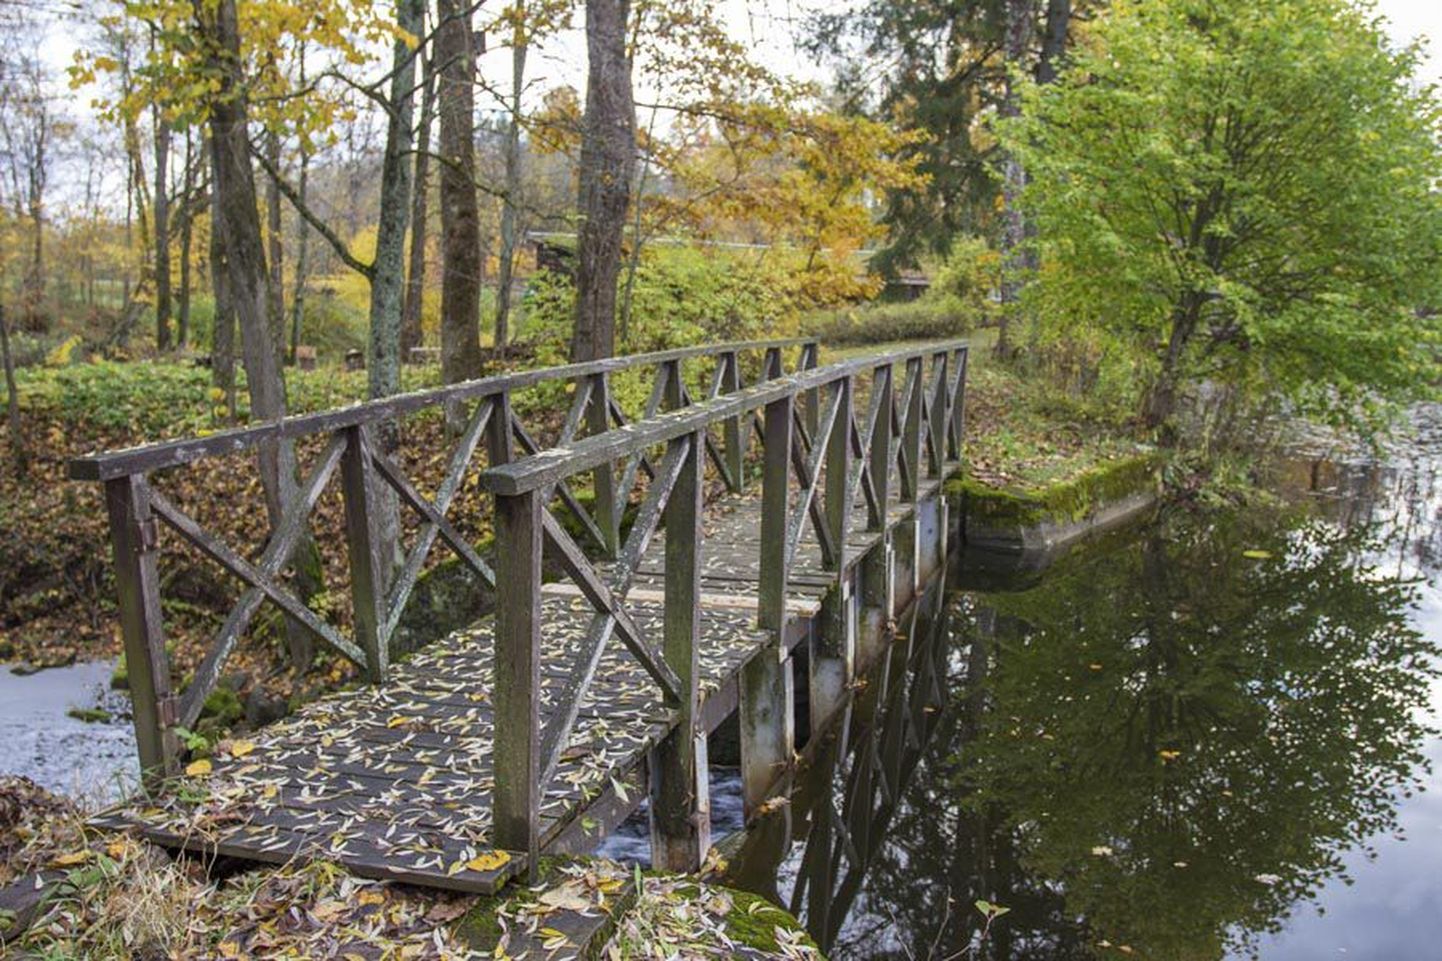 Praegu on Uueveski järve paisu mädanevad lauad kaitstud veekindla vineeriga ning välja on vahetatud ka üks silla aste.